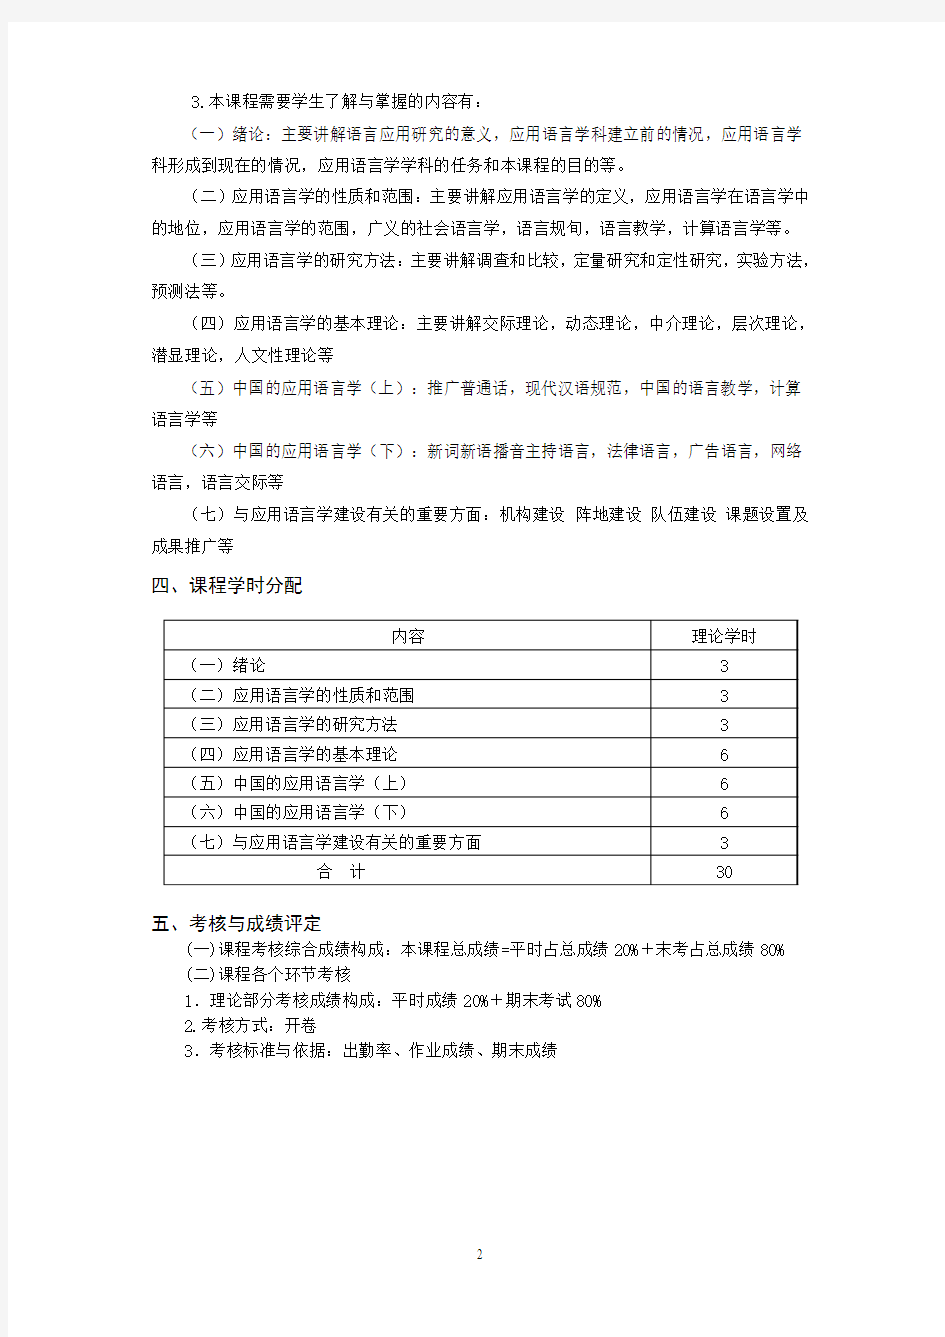 汉语国际教育专业《应用语言学》教学大纲